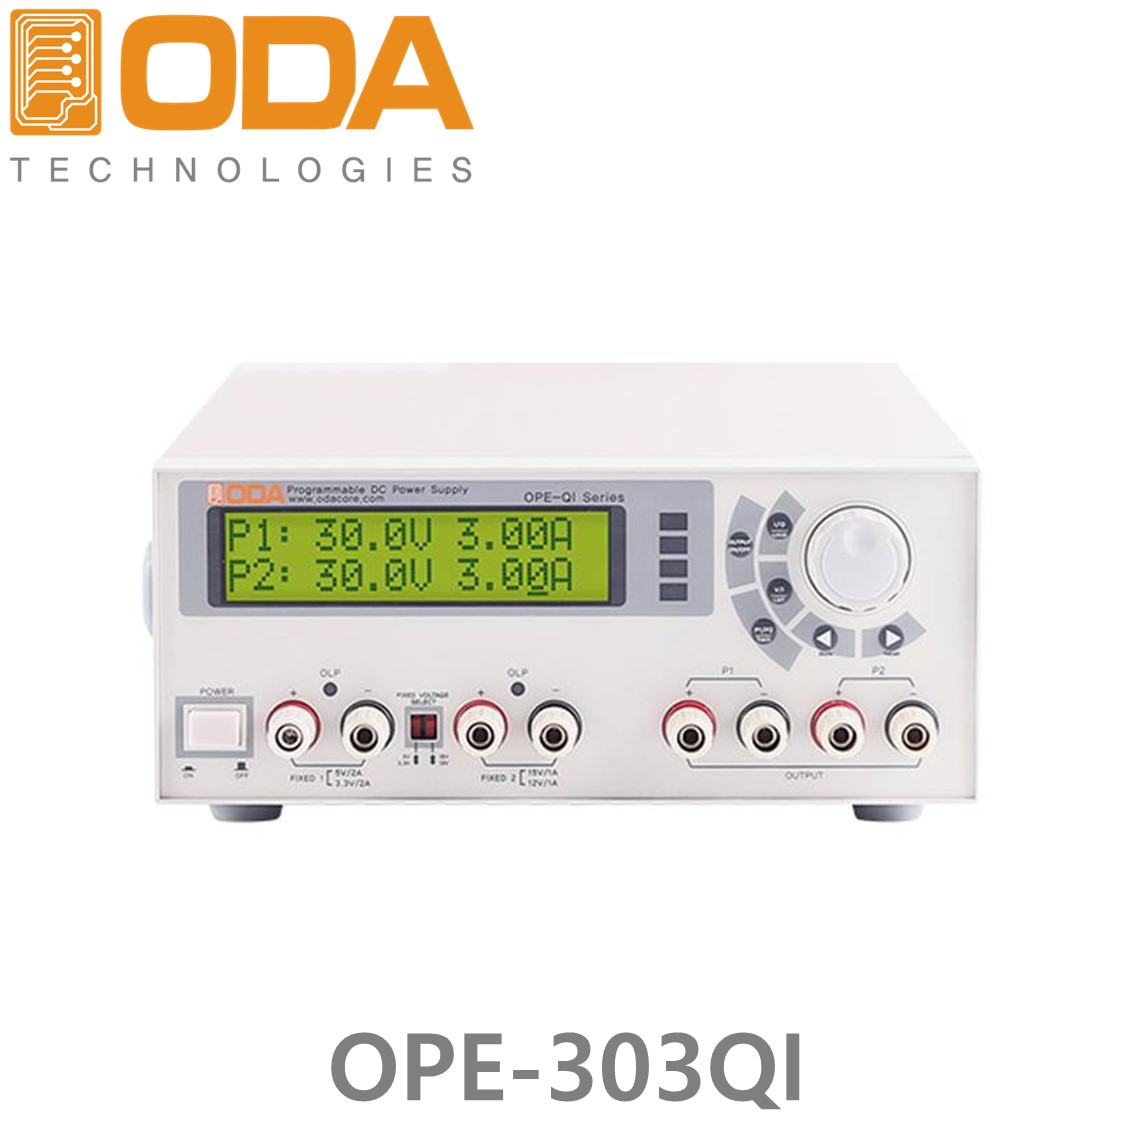 [ ODA ] OPE-303QI,  ±30V/3A x 2채널, 5V(or 3.3V)/2A x 1채널, 15V(or 12V)/1A x 1채널 180W